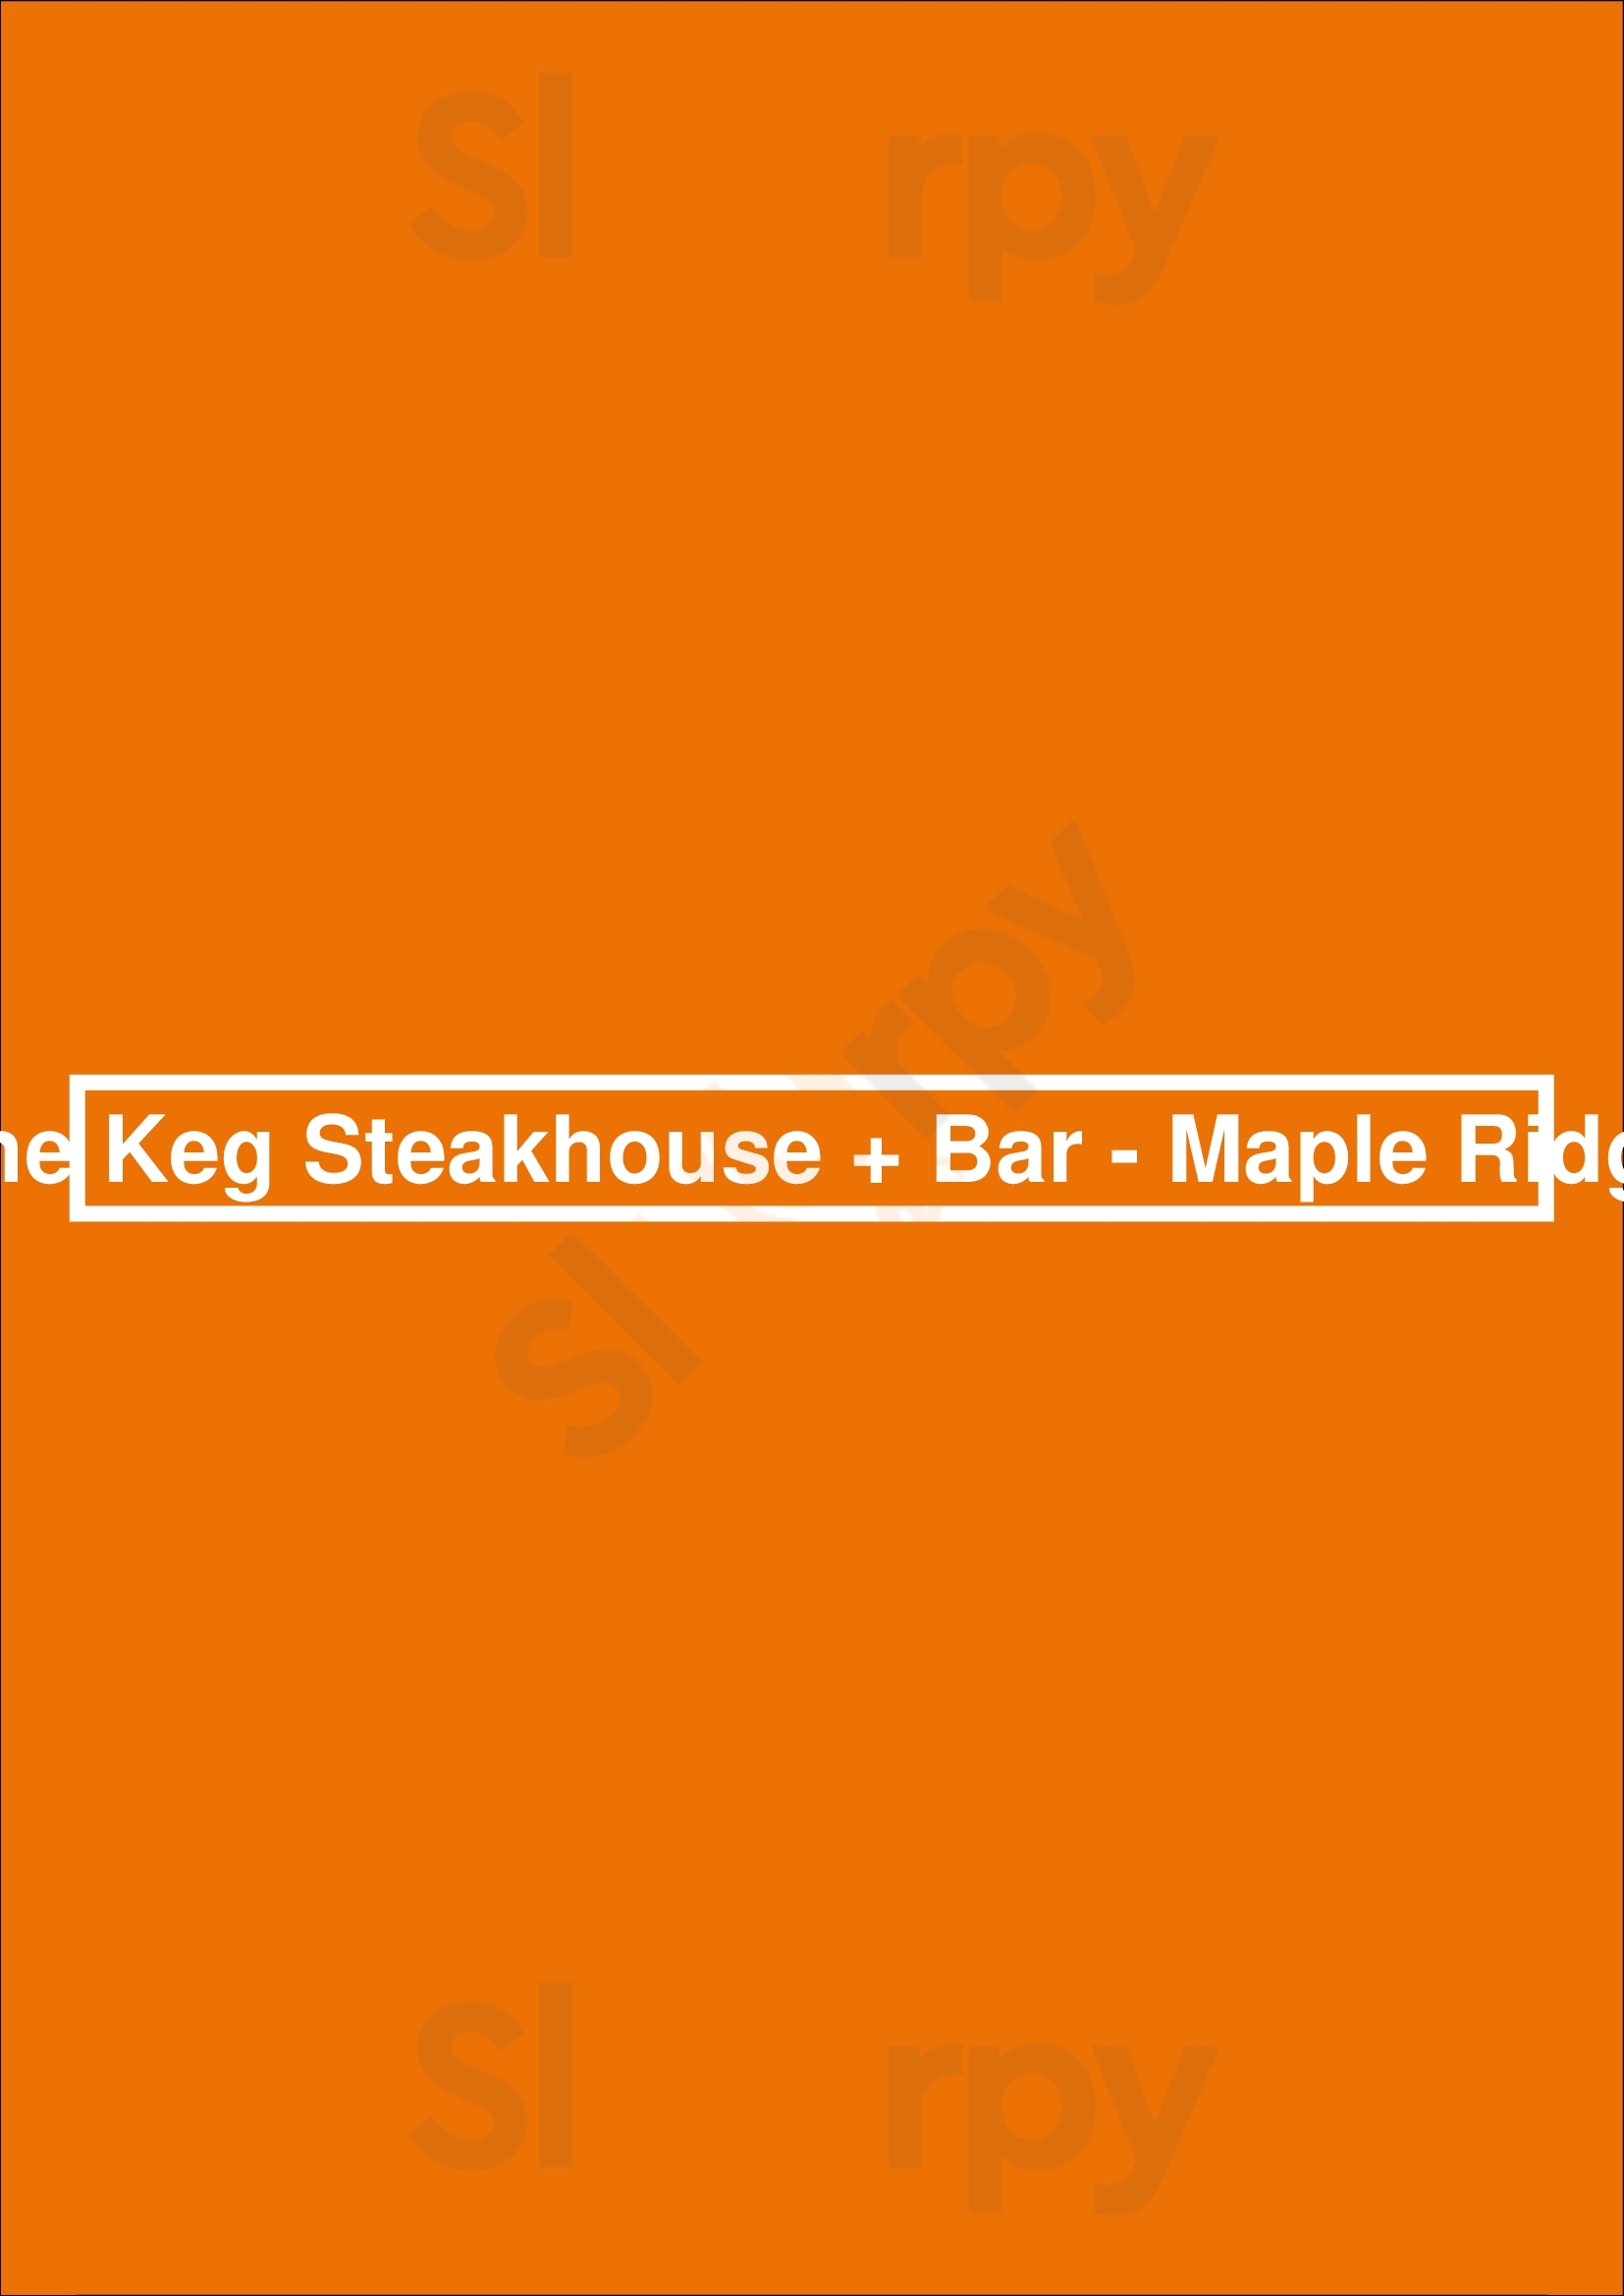 The Keg Steakhouse + Bar - Maple Ridge Maple Ridge Menu - 1